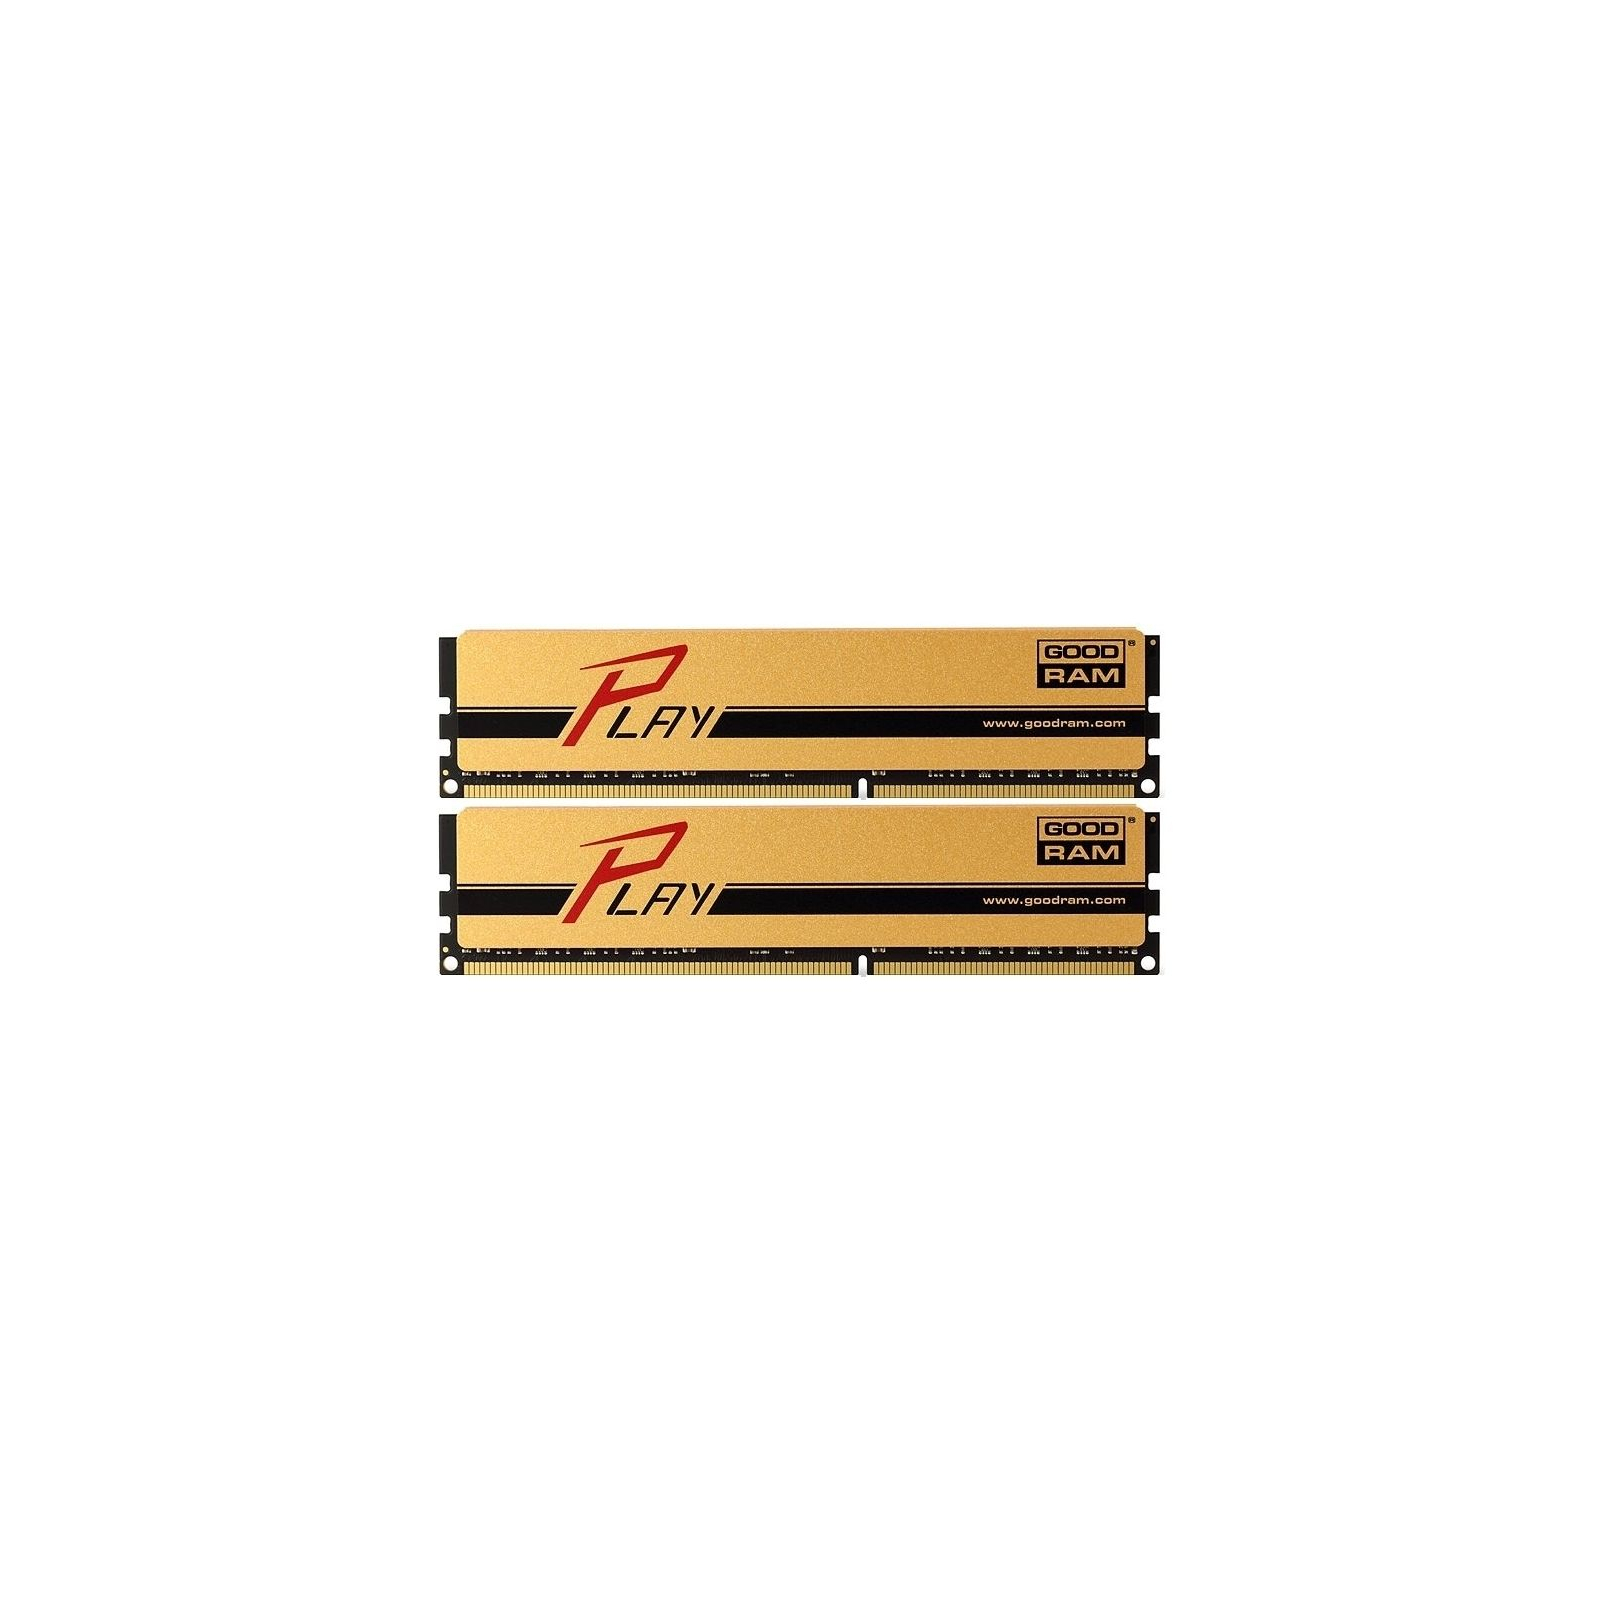 Модуль памяти для компьютера DDR3 8GB (2x4GB) 1866 MHz PLAY Gold Goodram (GYG1866D364L9AS/8GDC)